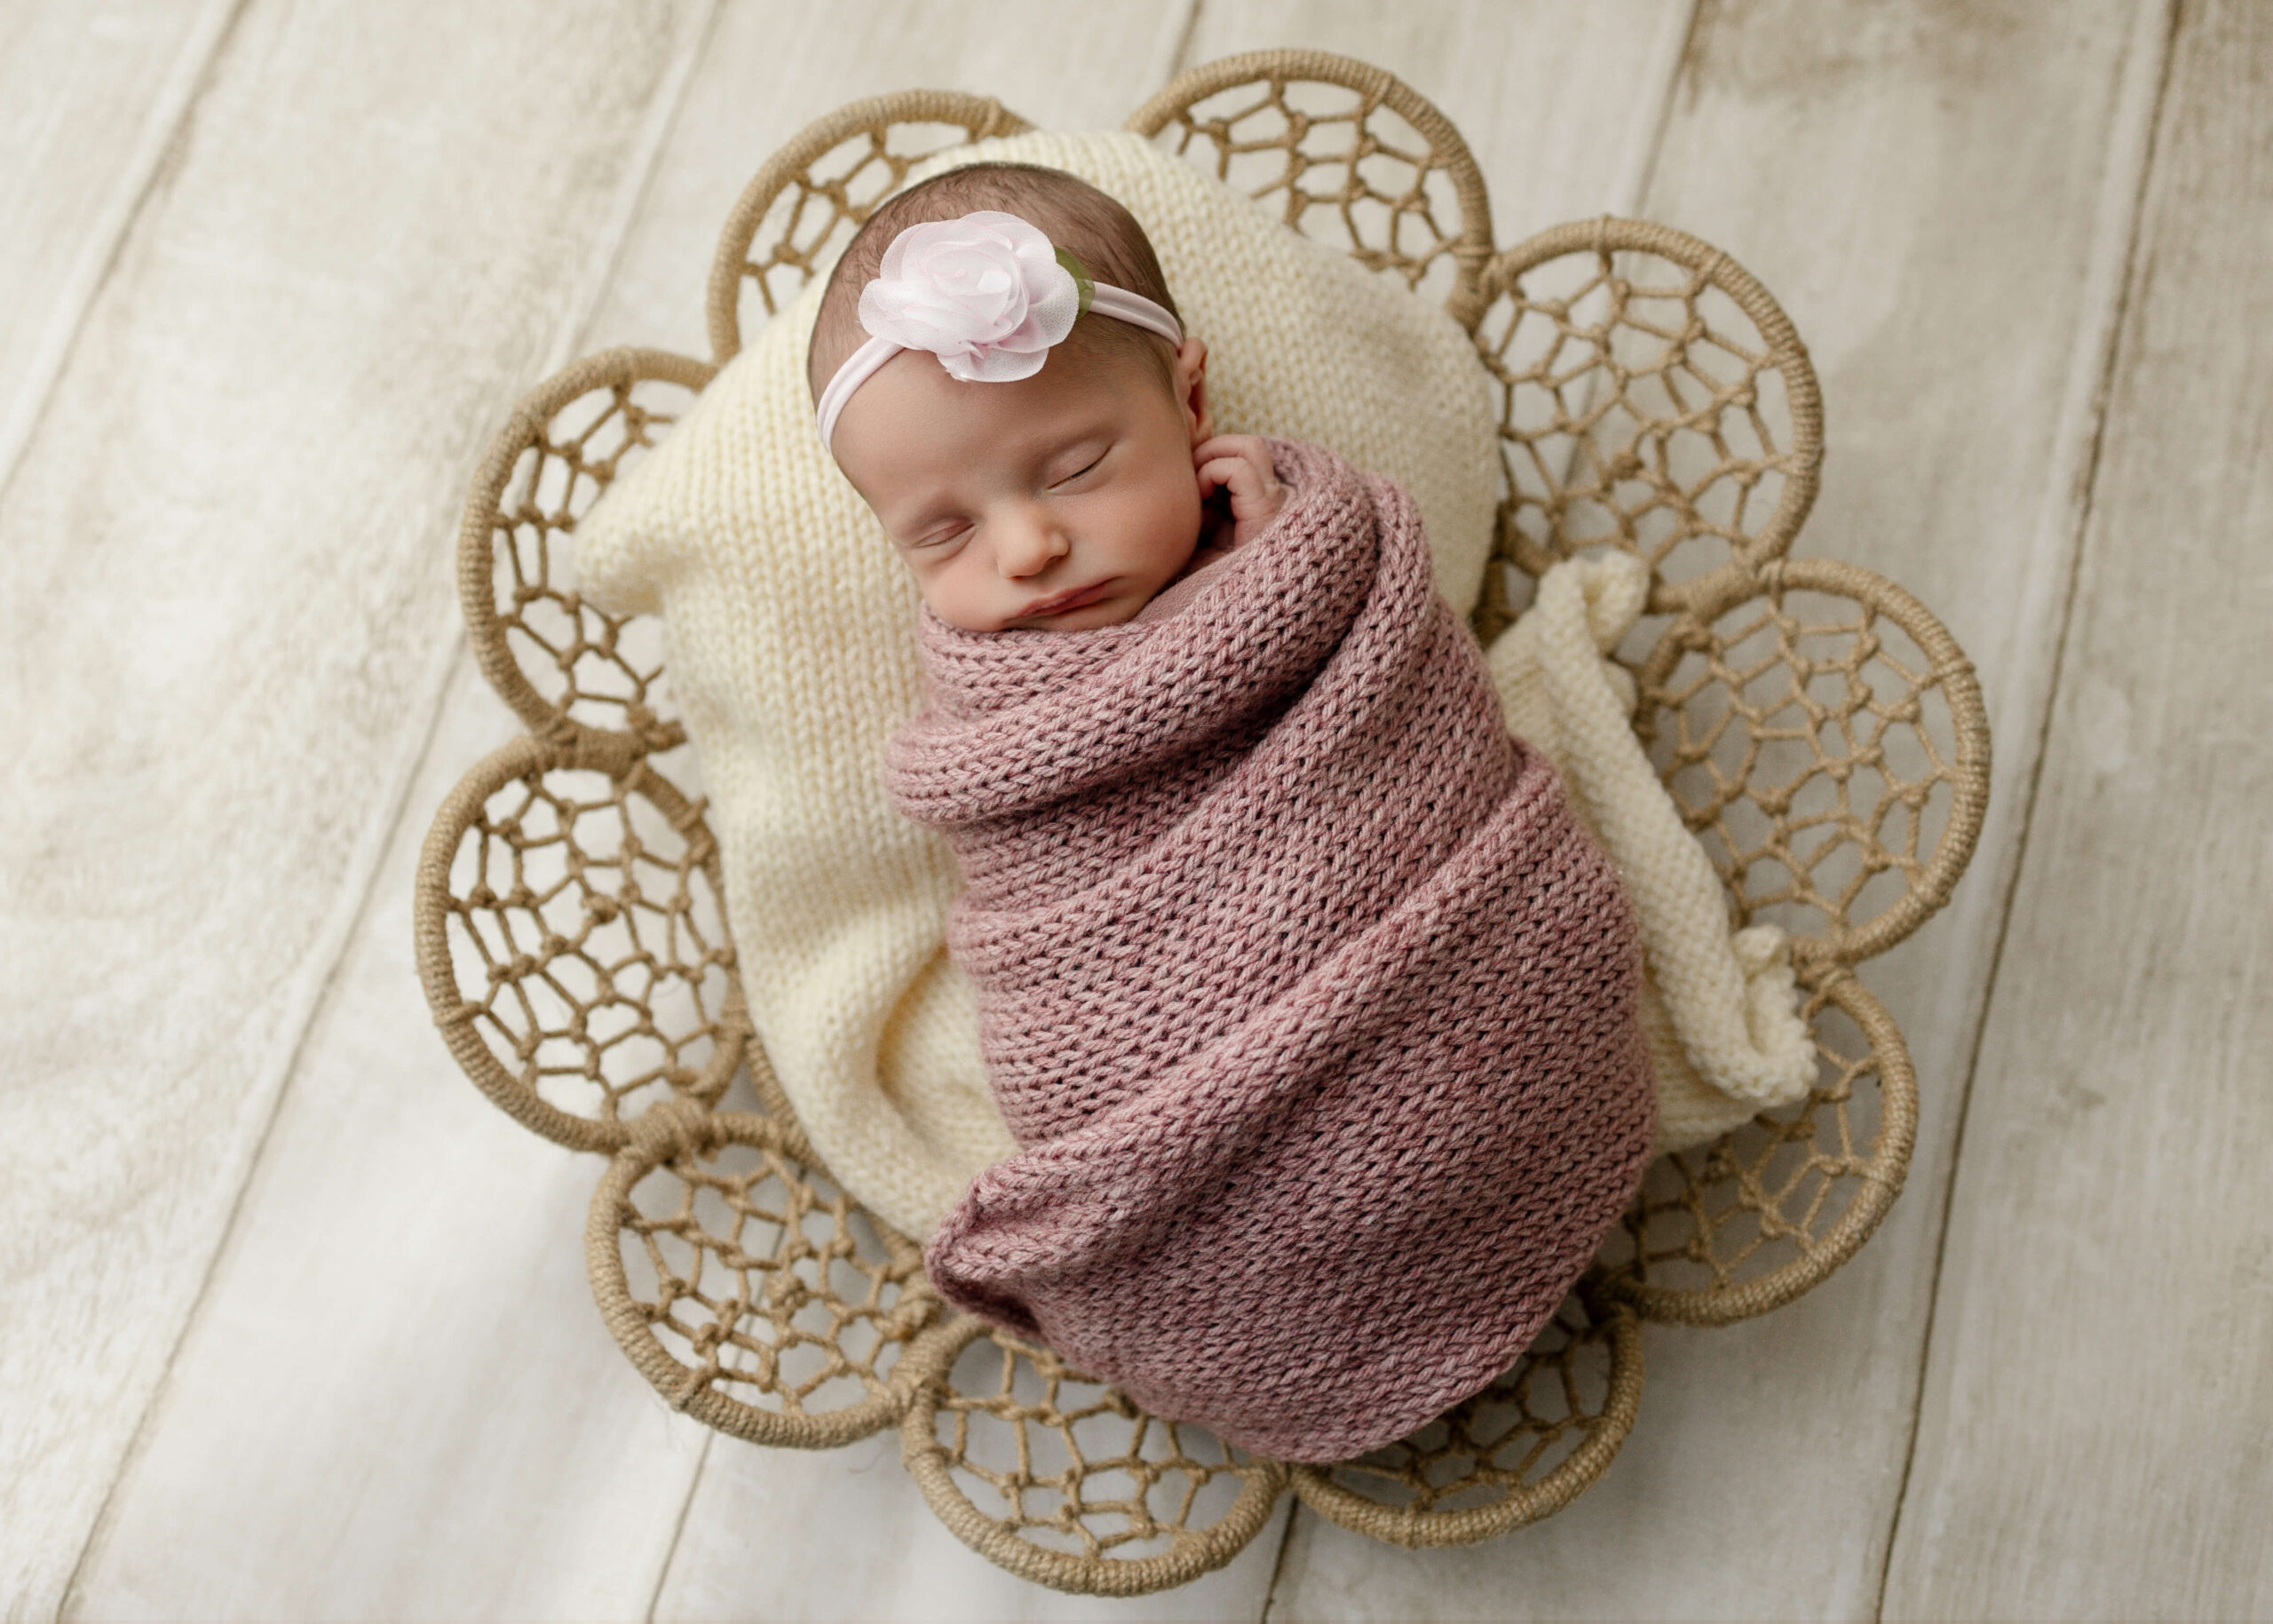 Baby girl posed in boho basket on wood floor.